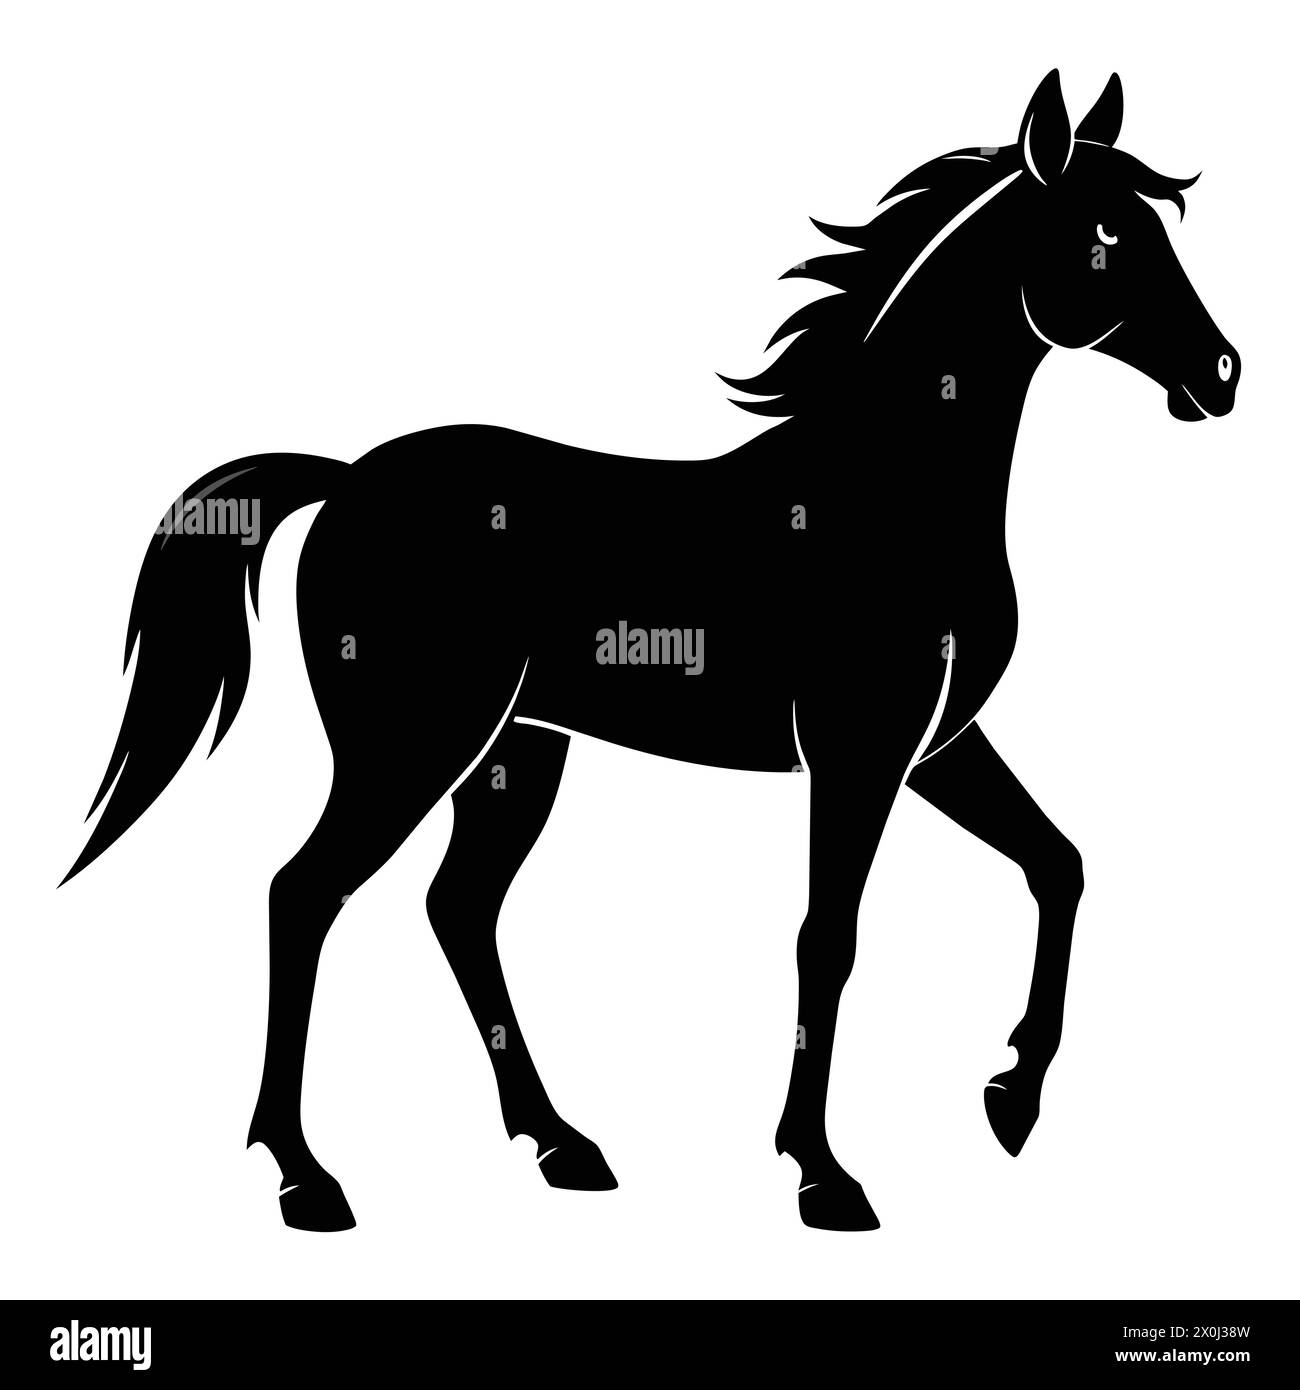 Illustrazioni di cavalli - ideale per il Branding equestre, le stampe artistiche e l'arredamento di fattorie Illustrazione Vettoriale